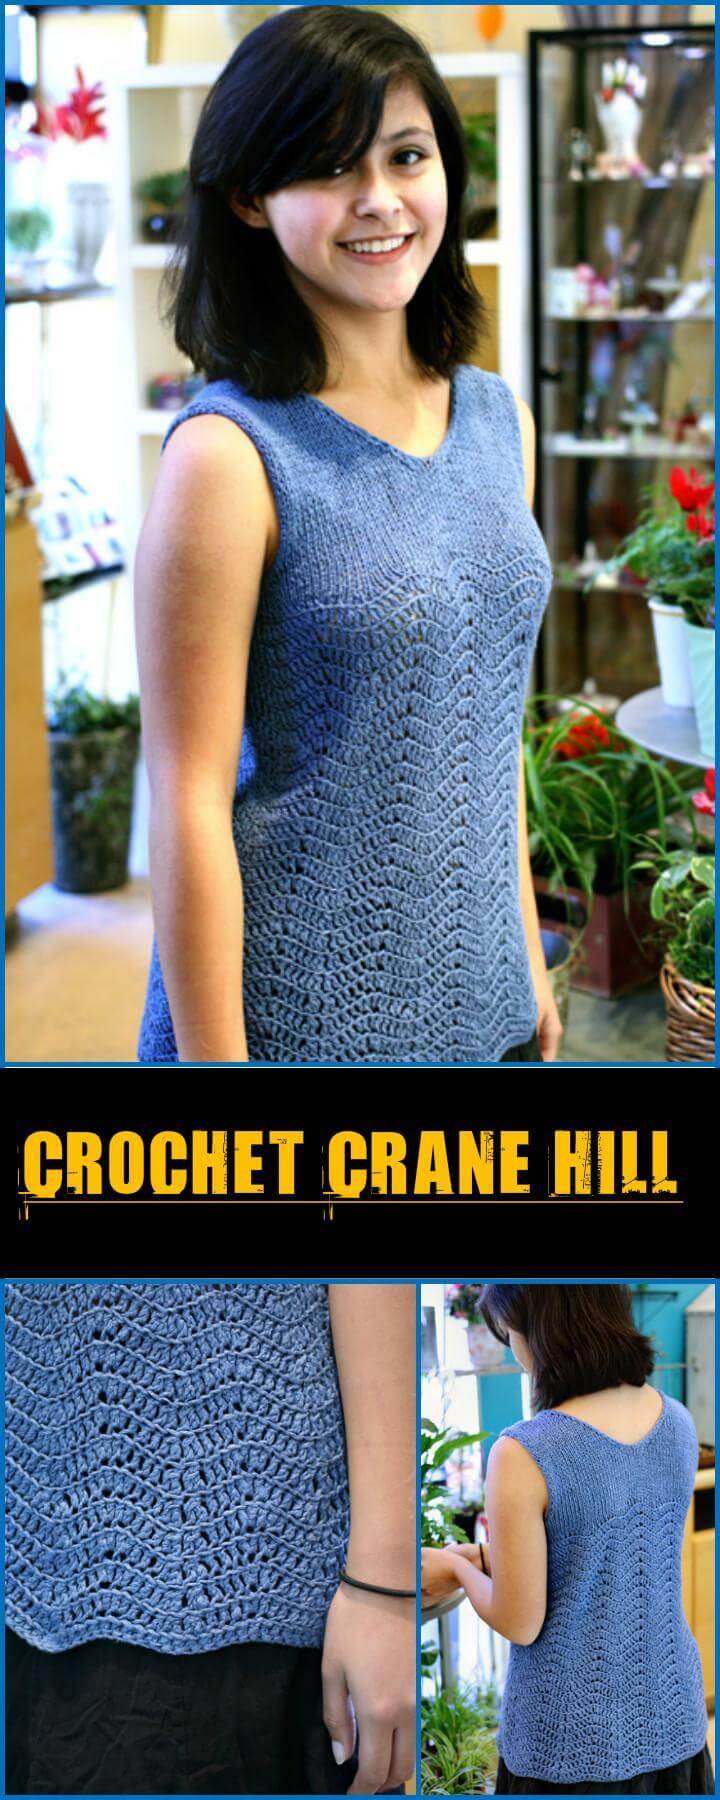 Crochet Crane Hill